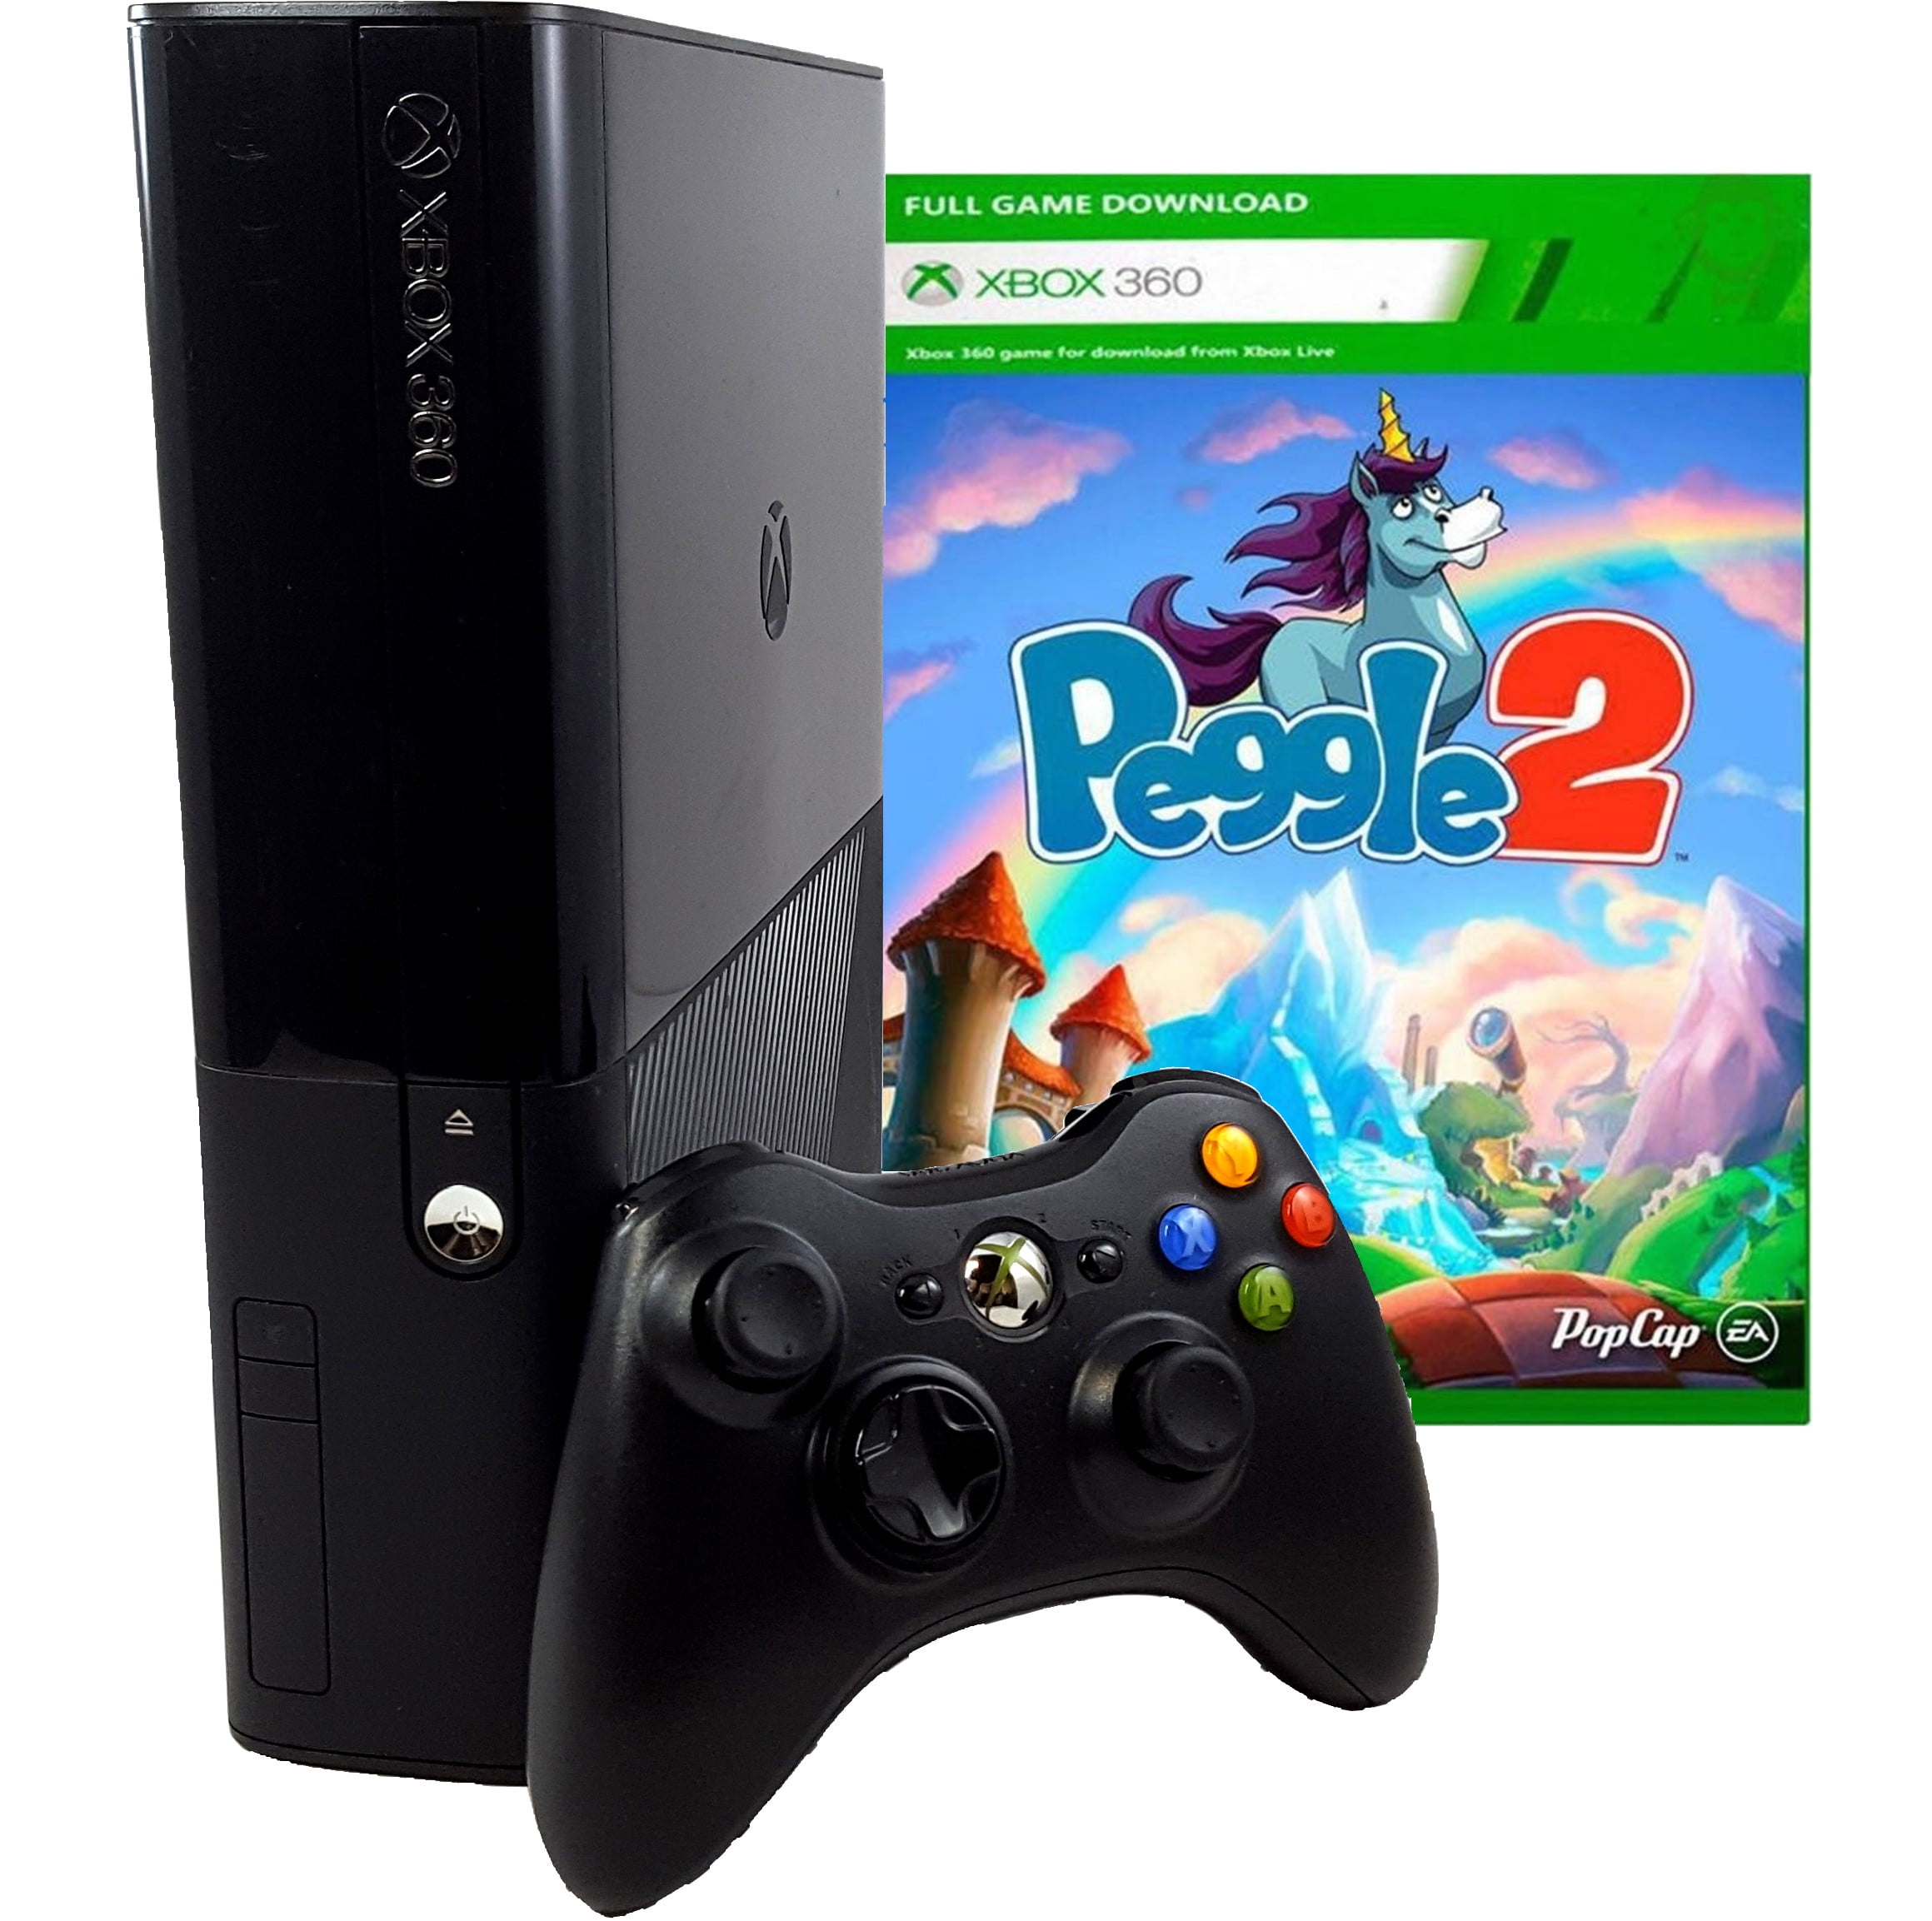 Video game - Microsoft Xbox 360 E Arcade (4GB / Peggle 2) - Preto -  L9V-00044 / 1538 - waz